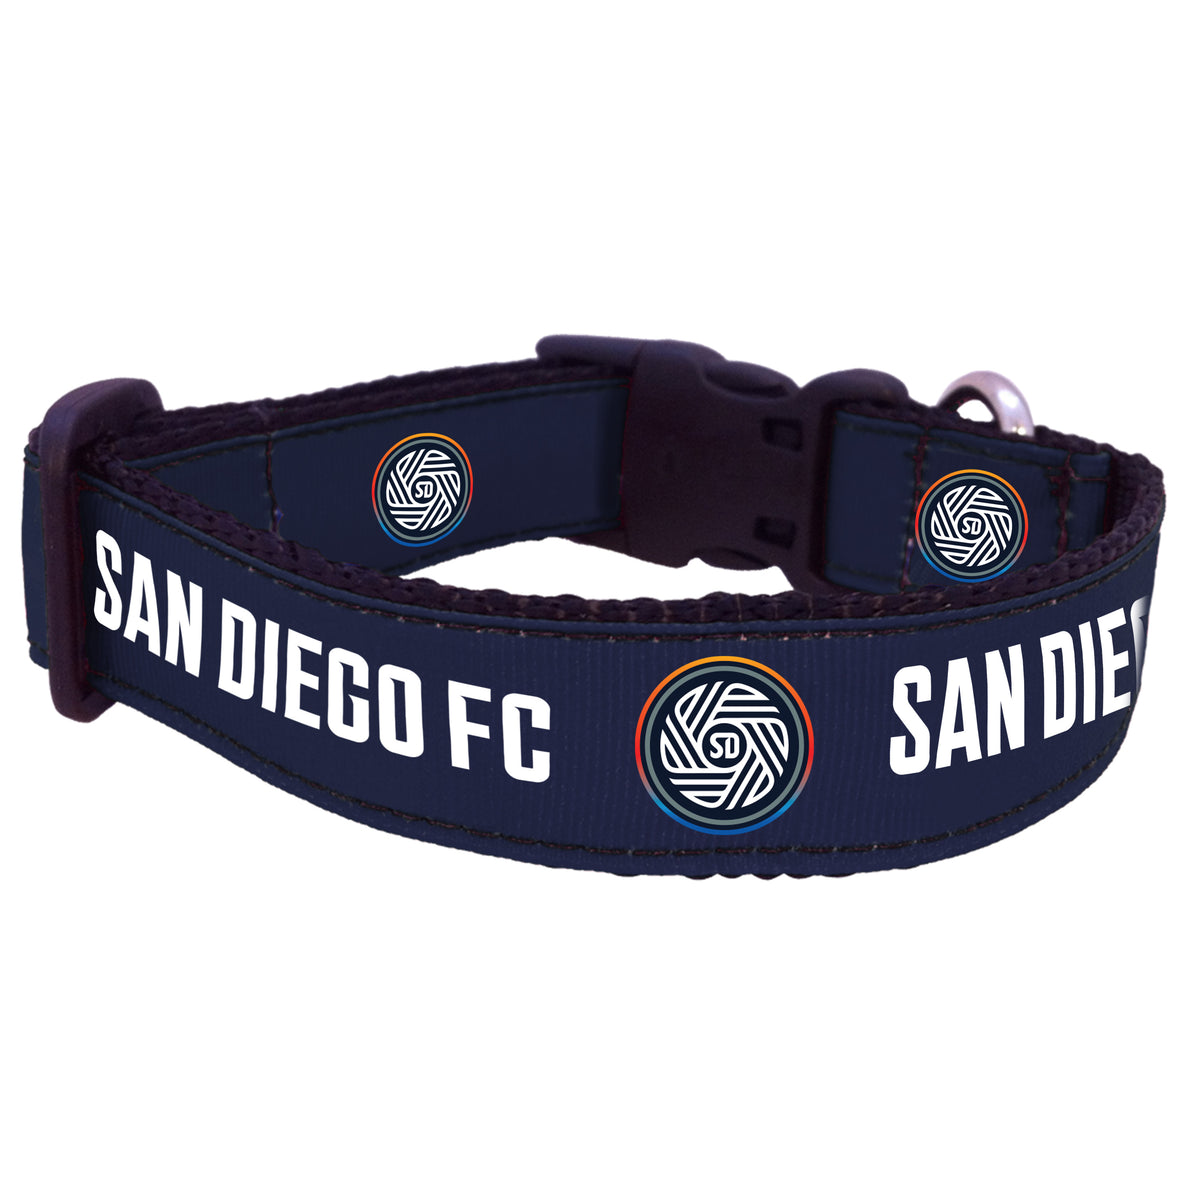 San Diego FC Dog Collar or Leash